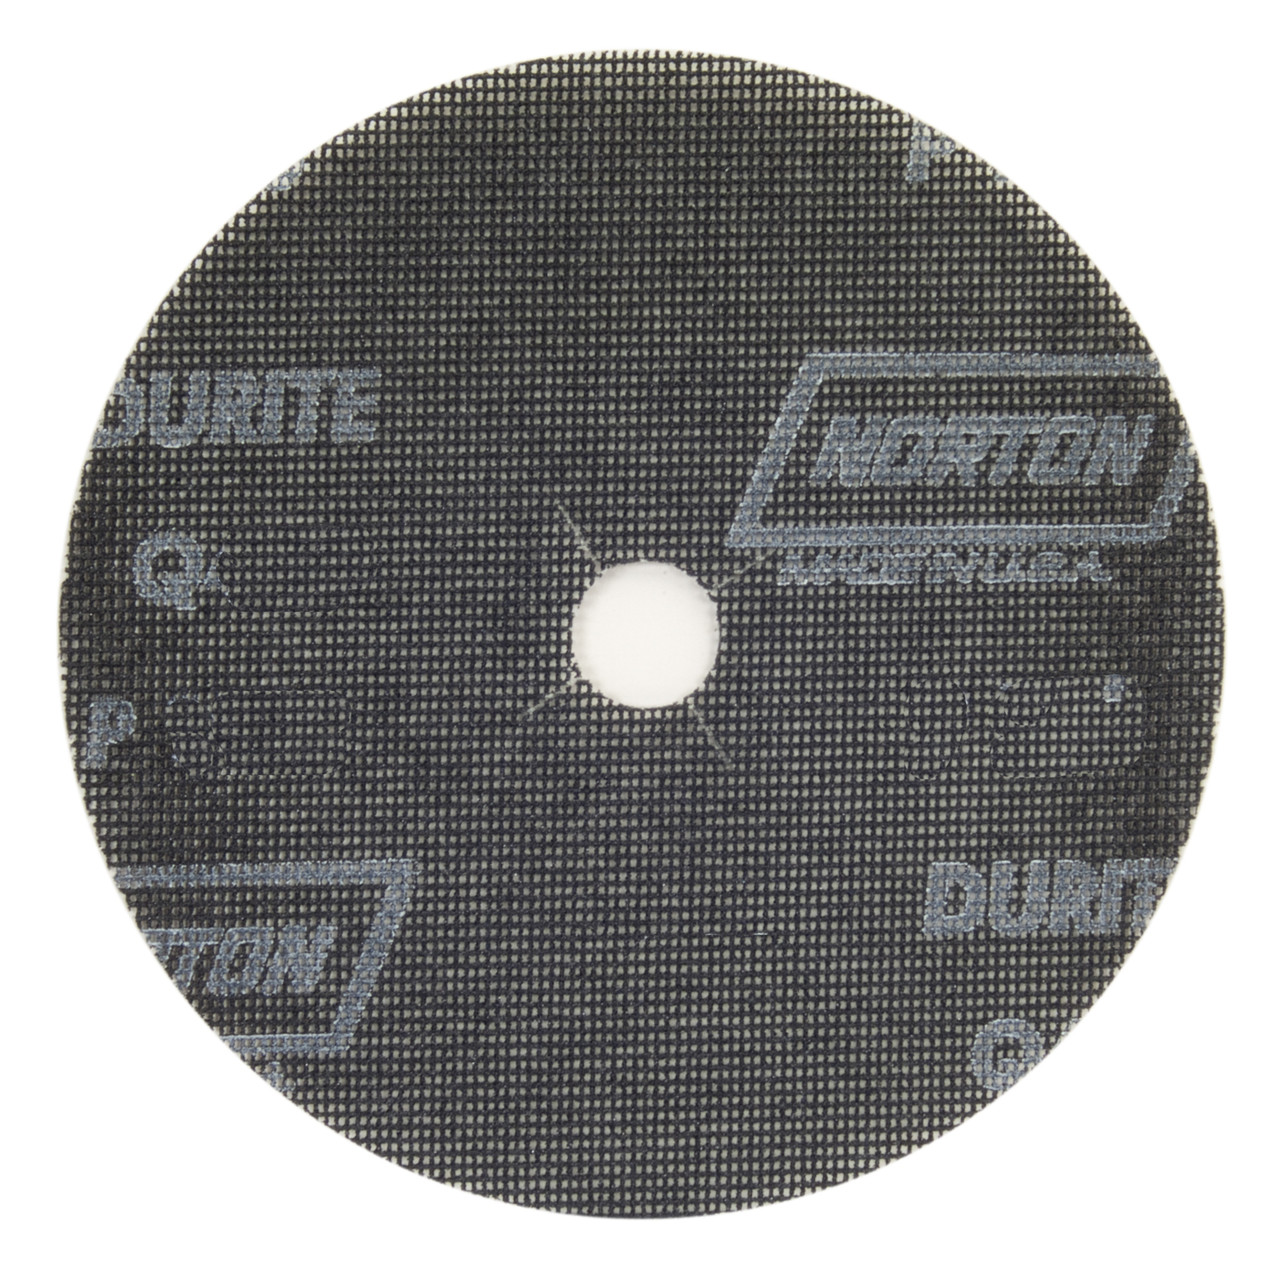 Norton Durite Silicon Carbide 7" x 7/8" - 80 grit Edger Screen Discs (20/Box)